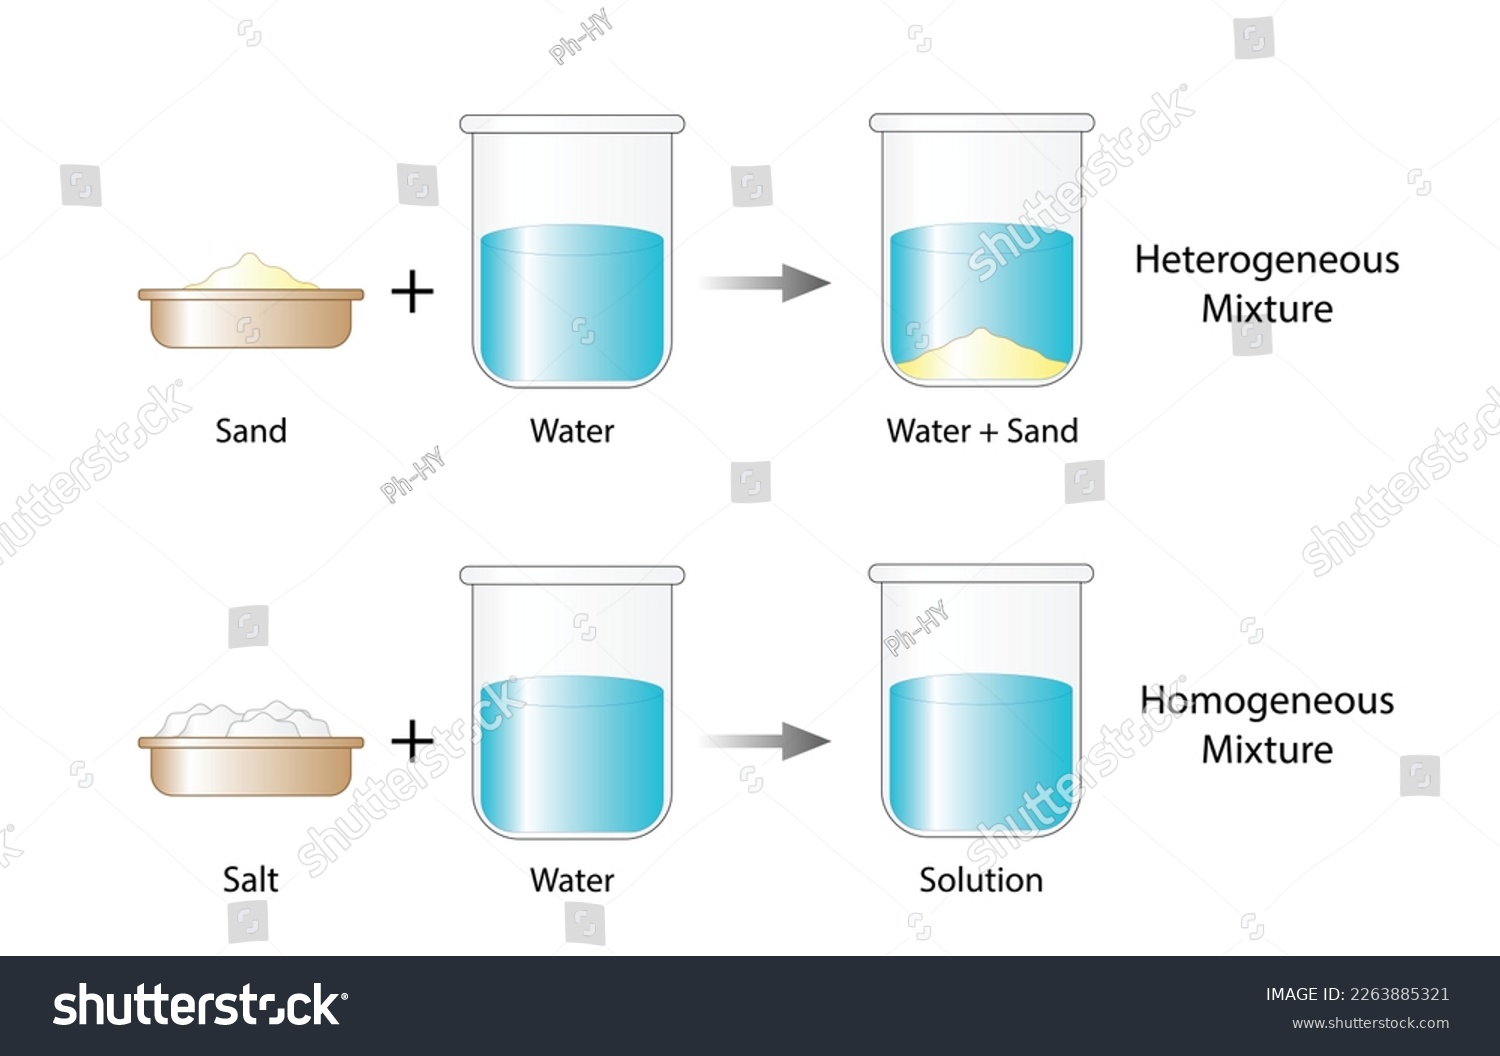 Heterogeneous mixture,  composition of mixture is not uniform, Sand and water. Homogeneous mixture, uniform composition, salt and water. Chemistry experiment. Scientific design. Vector illustration. #2263885321